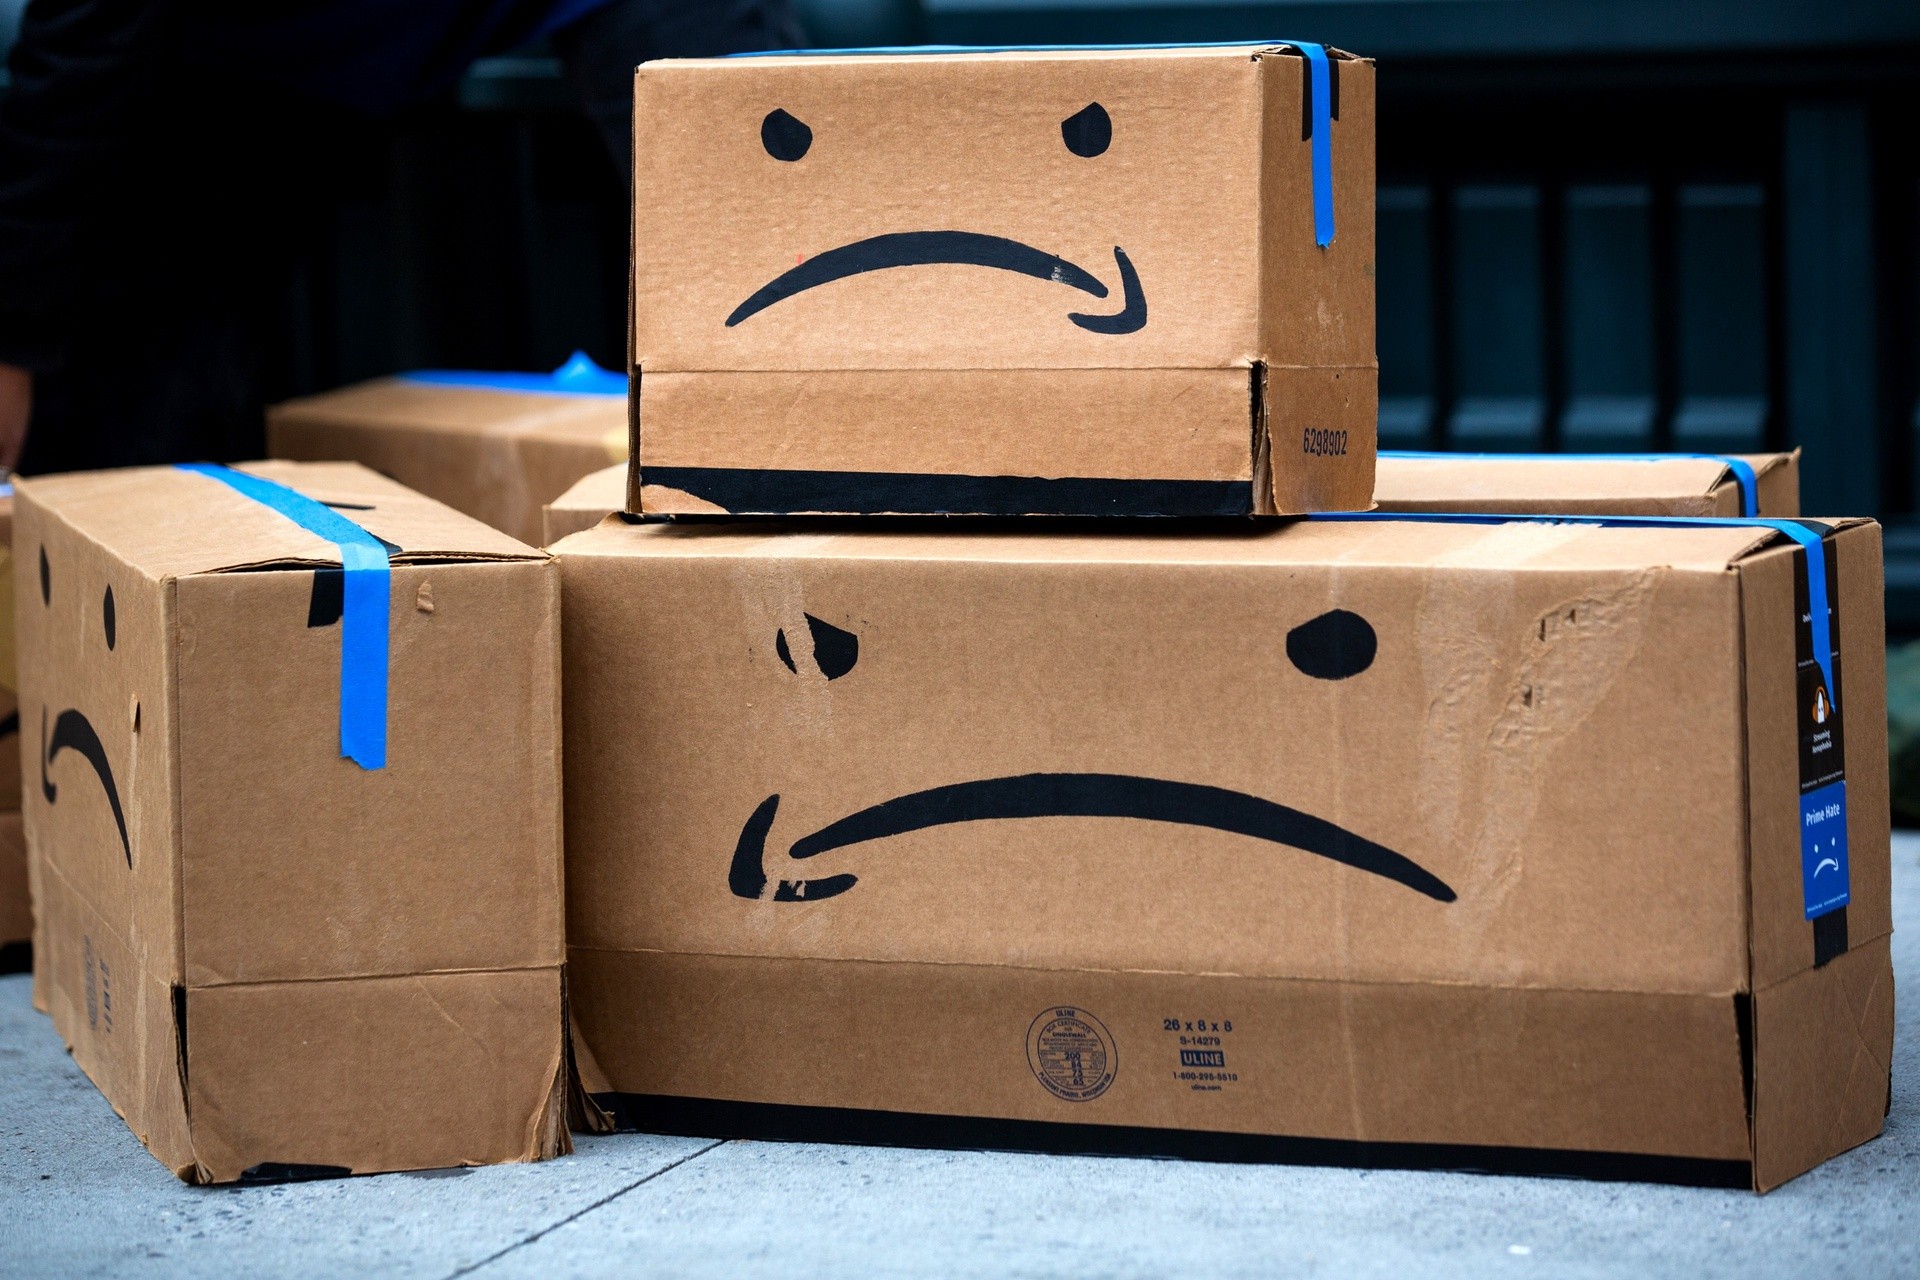 
Amazon phủ nhận cáo buộc liên quan đến dùng dữ liệu người bán&nbsp;
